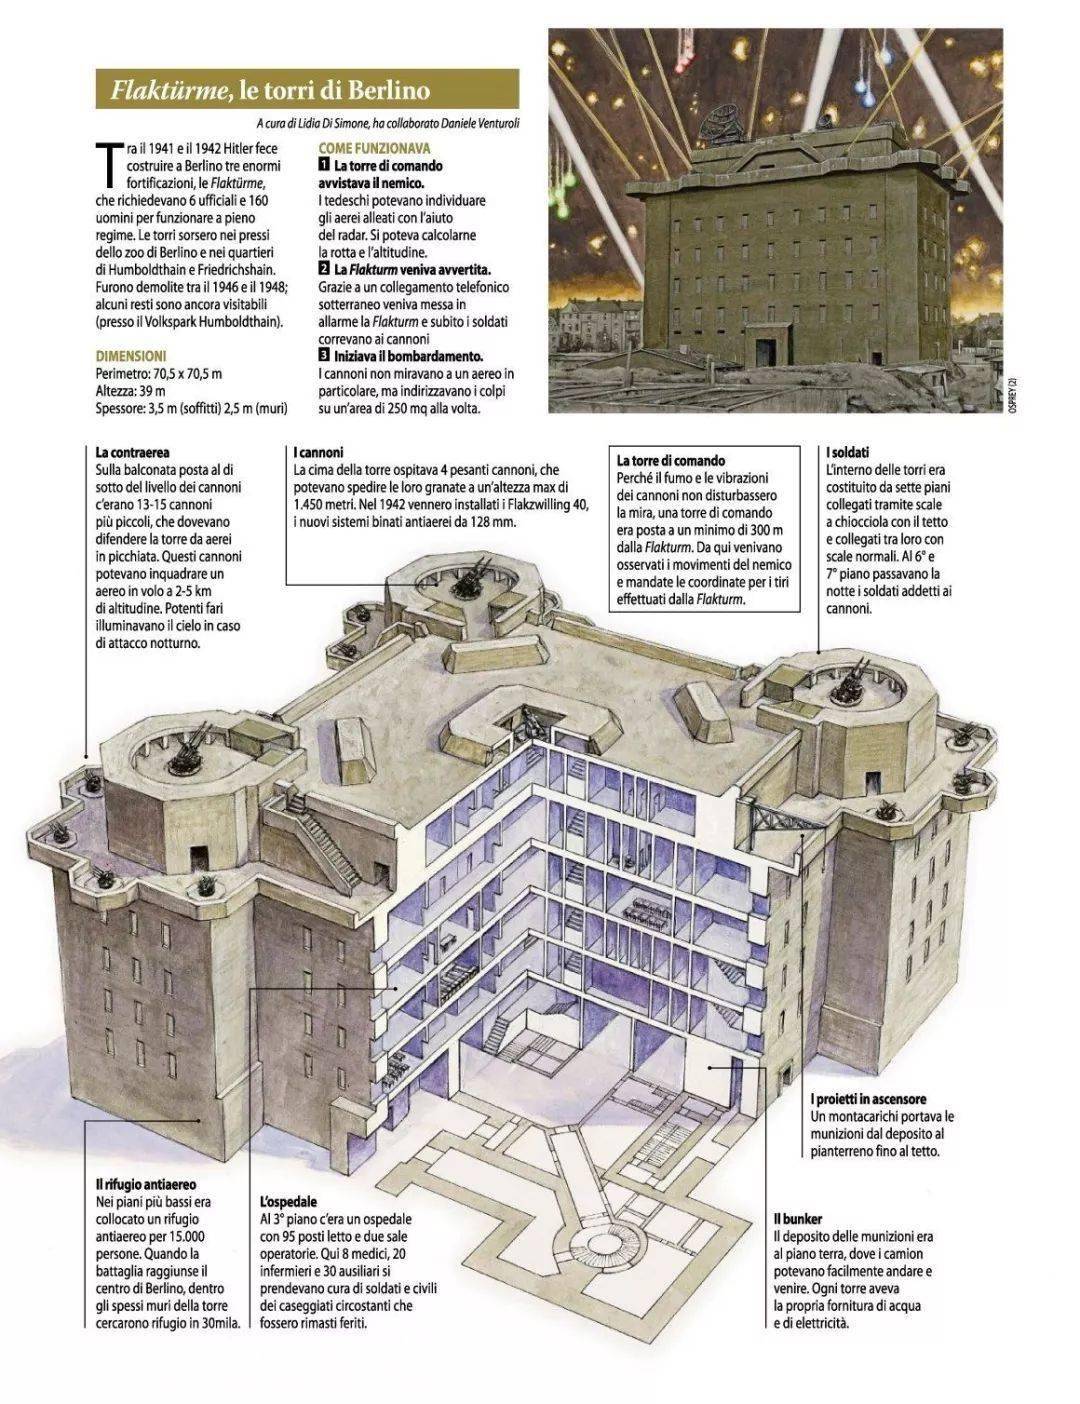 历史上的今天丨坚不可摧的巨型堡垒——二战德国防空塔